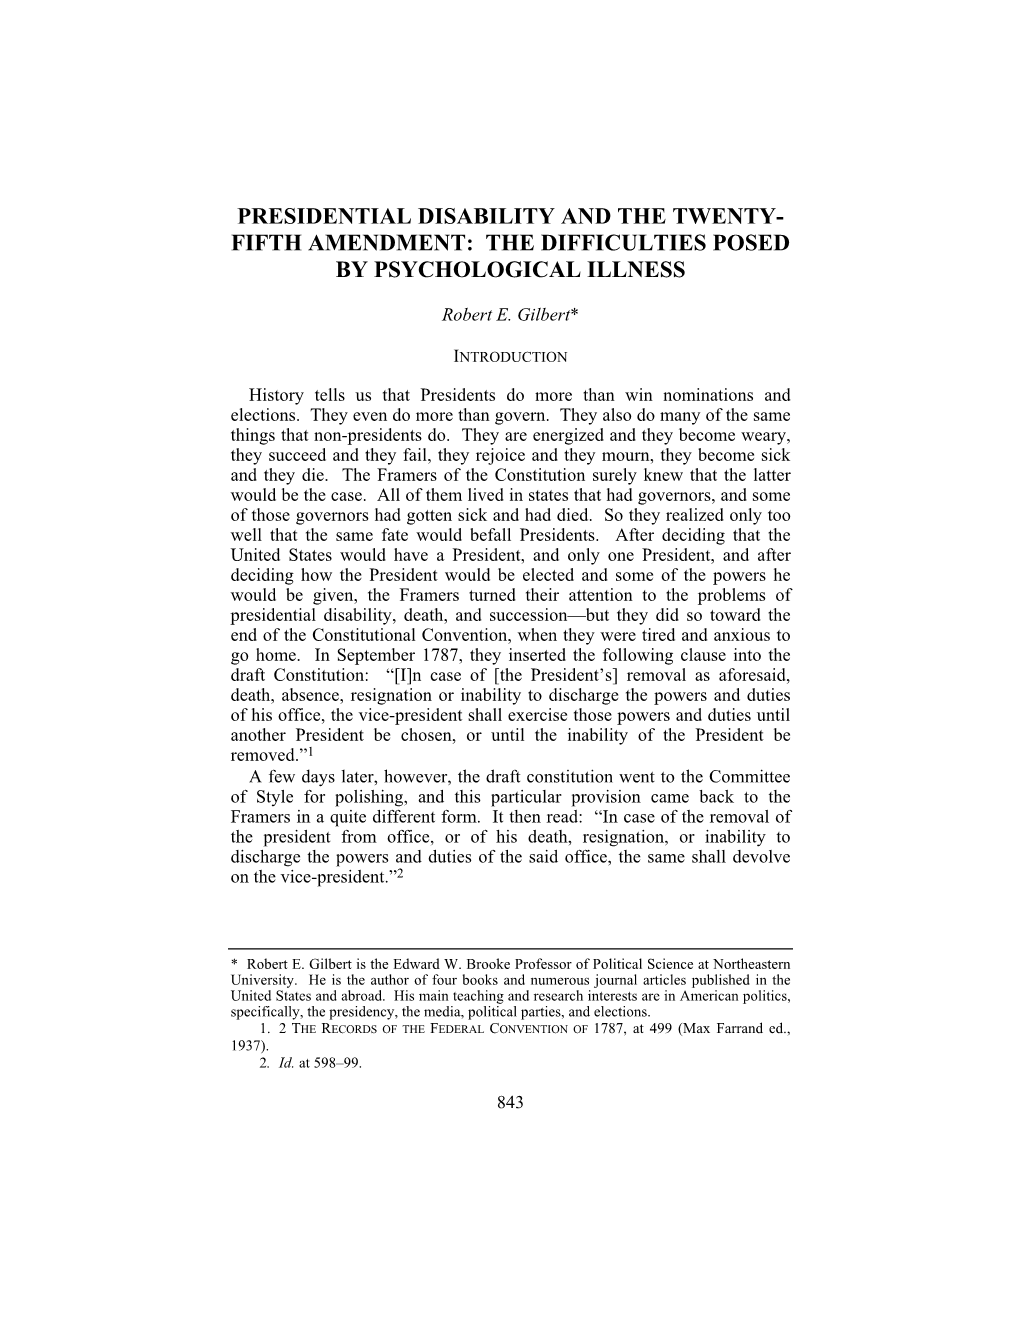 PRESIDENTIAL DISABILITY and the TWENTY-FIFTH AMENDMENT 109 (Kenneth W